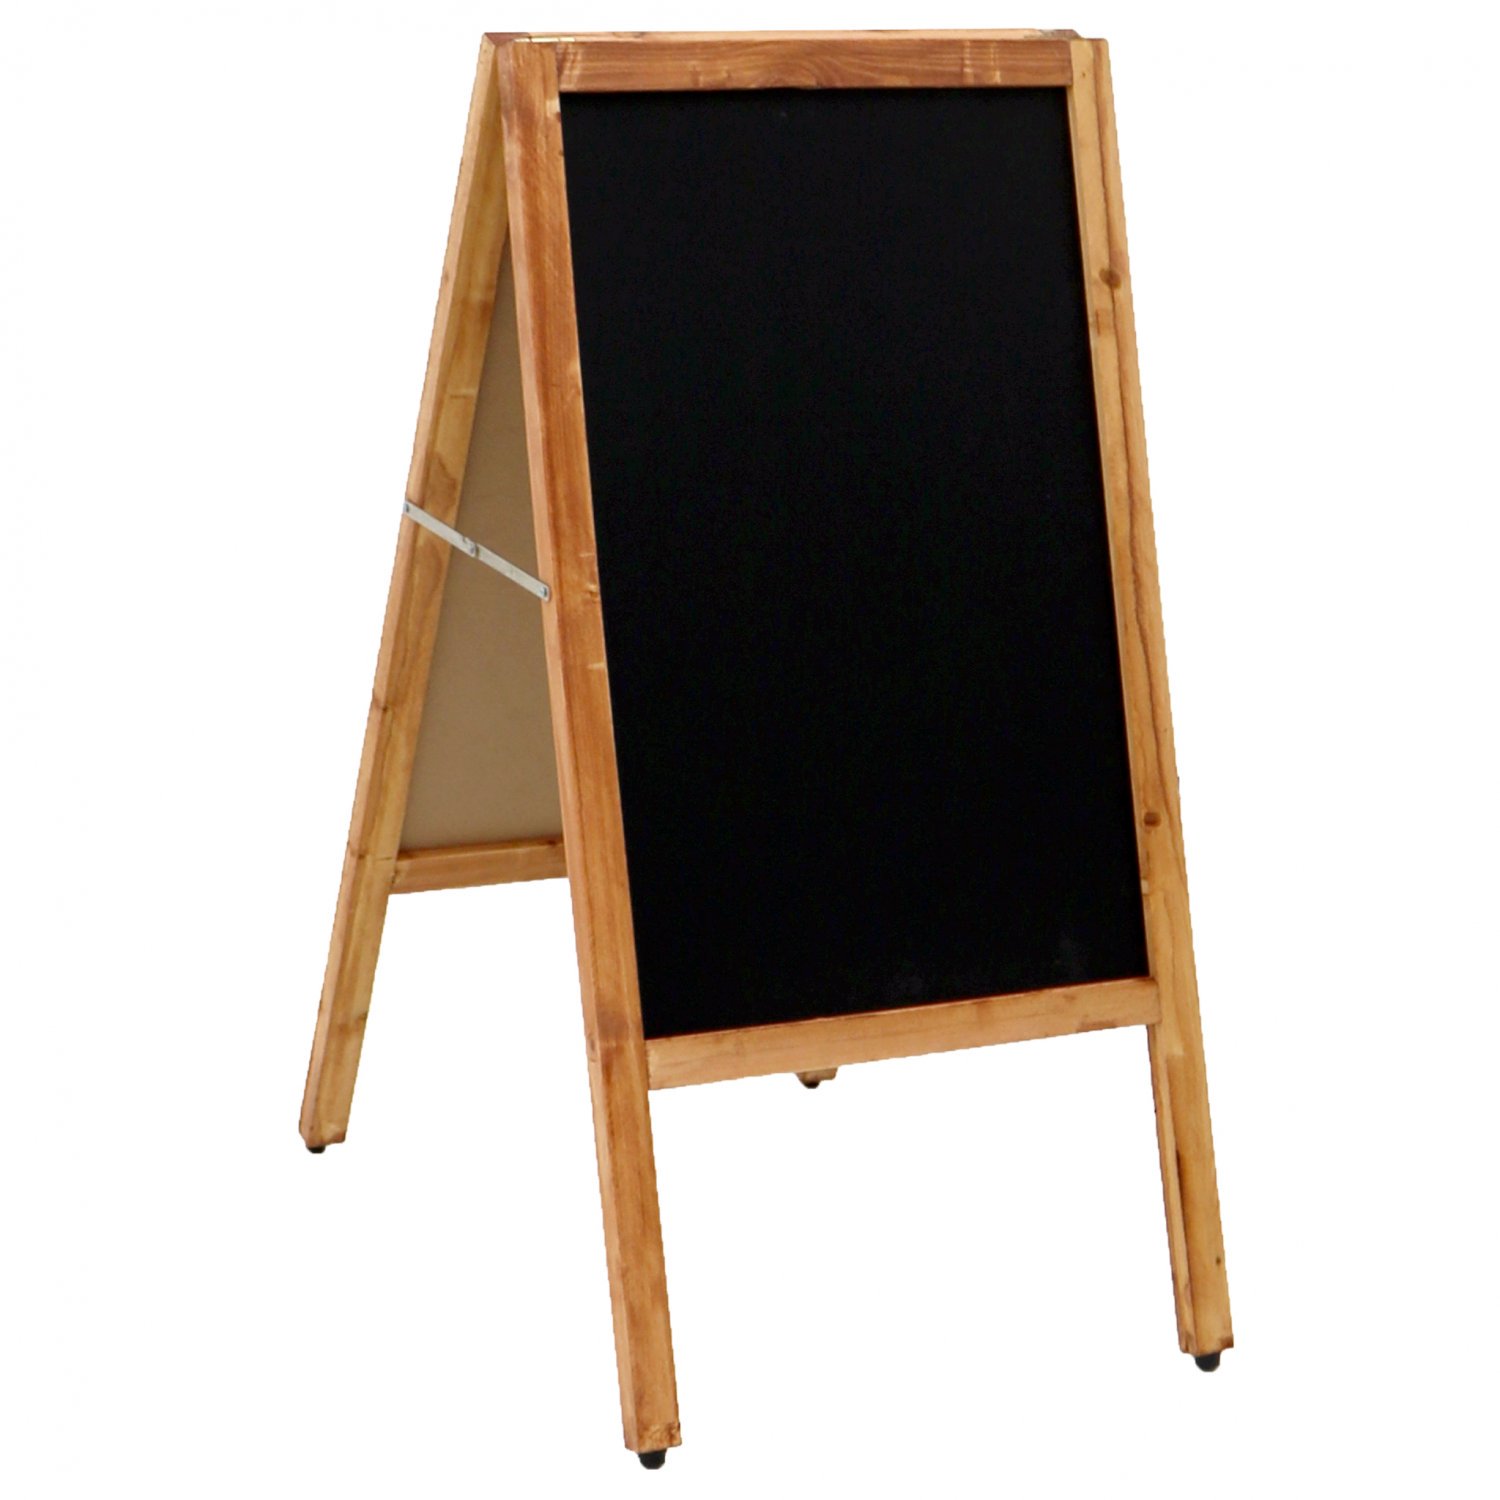 Wooden Chalkboard Blackboard Pavement Display Sign A-Board